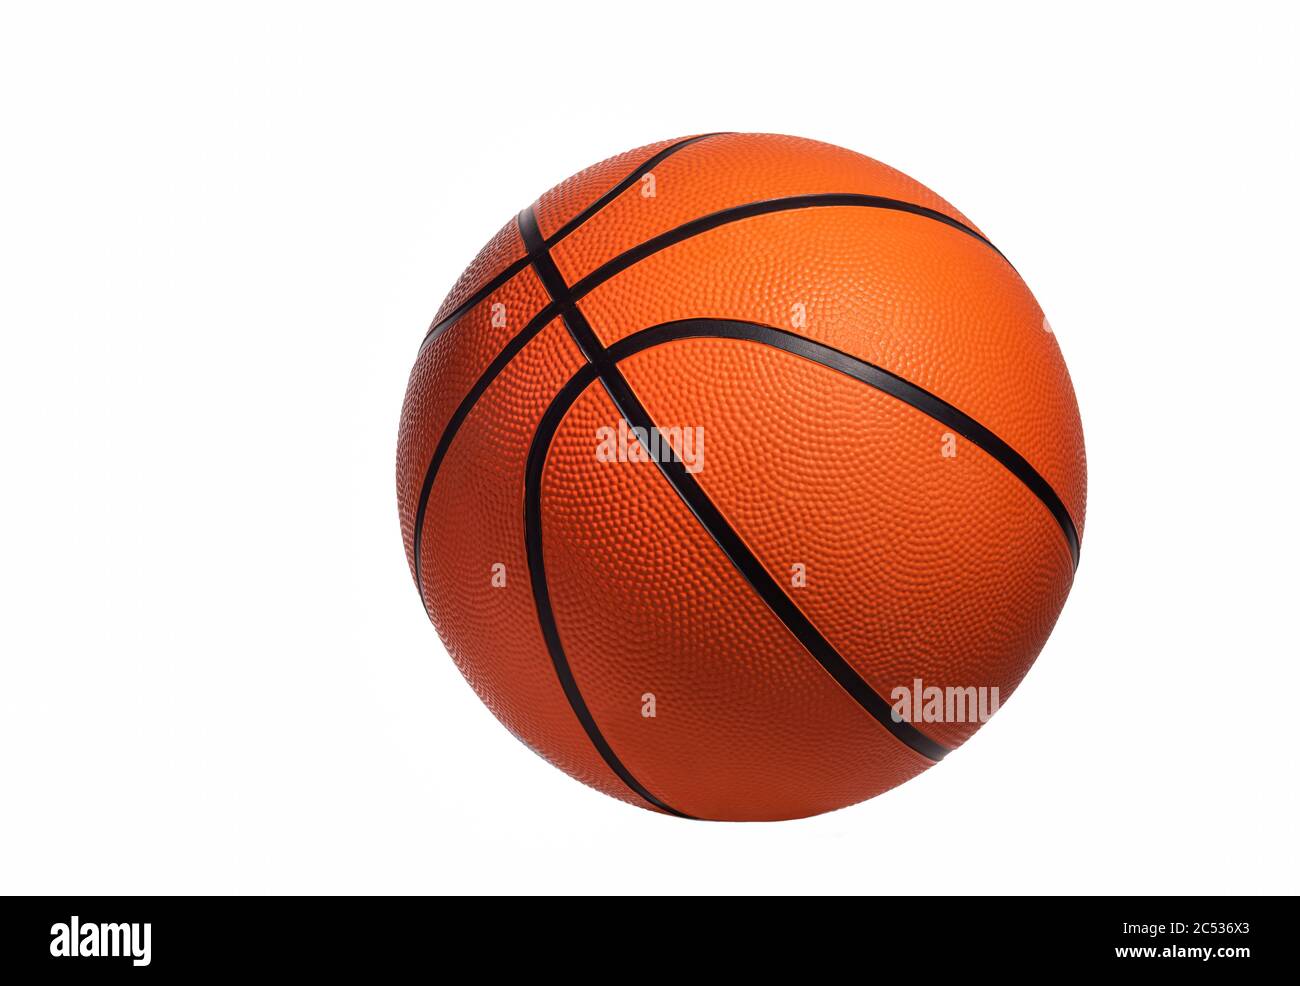 Basket-ball isolé sur fond blanc. Boule orange. Concept sportif. Banque D'Images